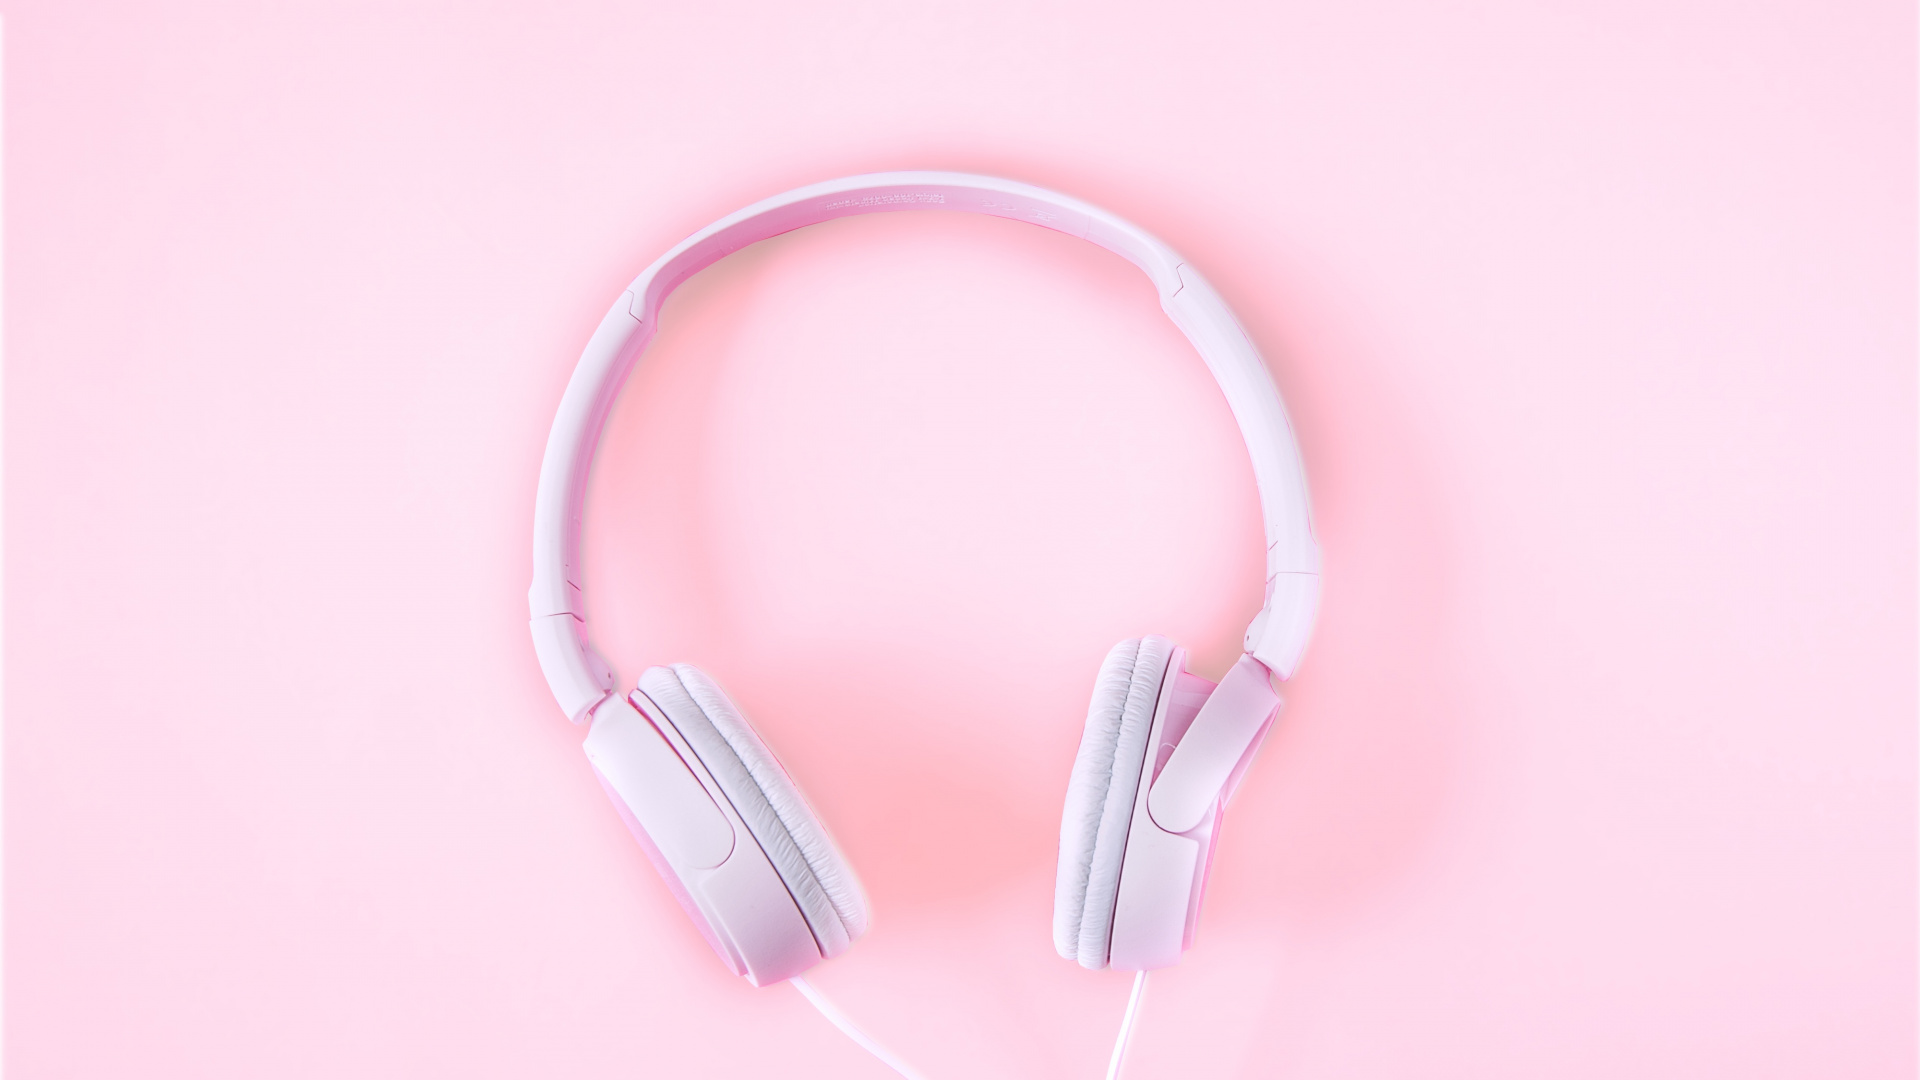 粉红色, 音频设备, 小工具, 耳朵, 电子设备 壁纸 1920x1080 允许